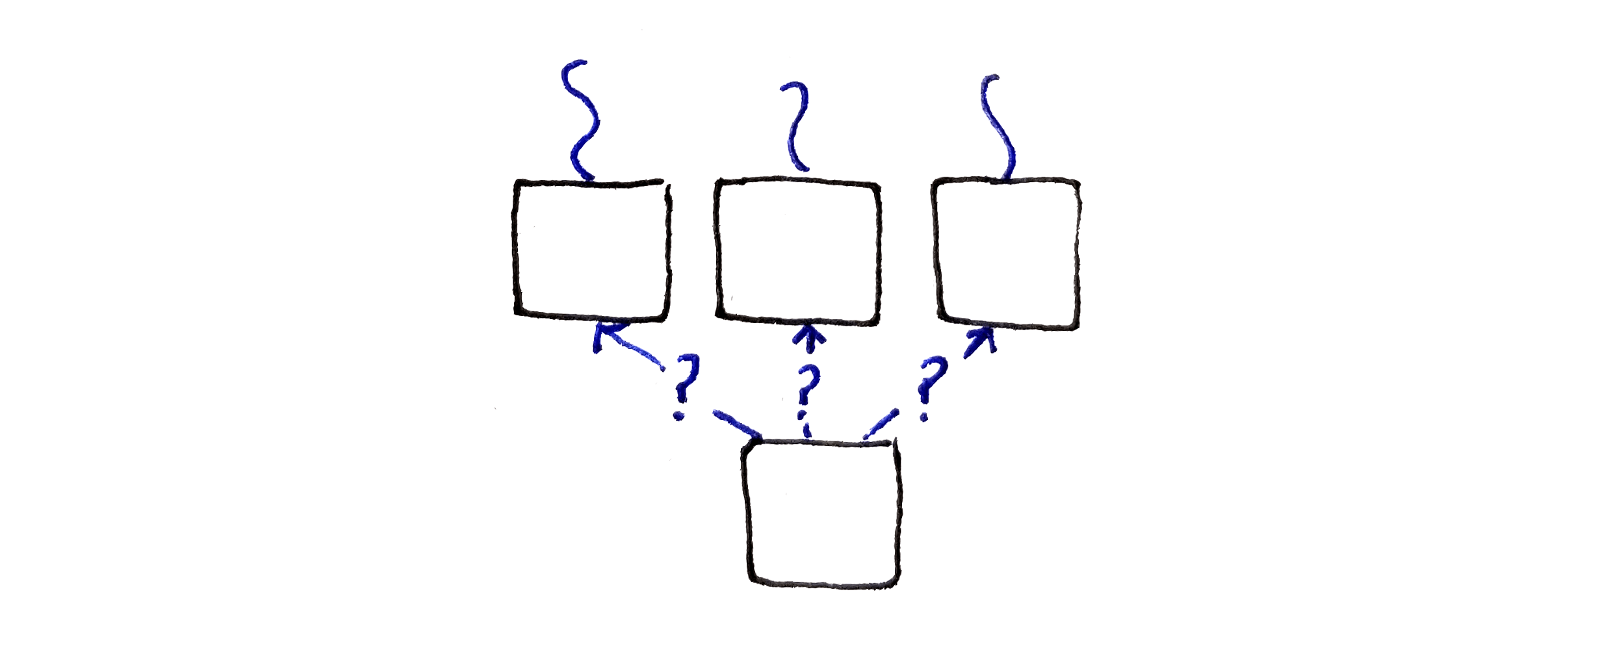 对每个像素，我们查看上一行中的三个像素。本质的问题是，我们应当延伸哪个接缝？